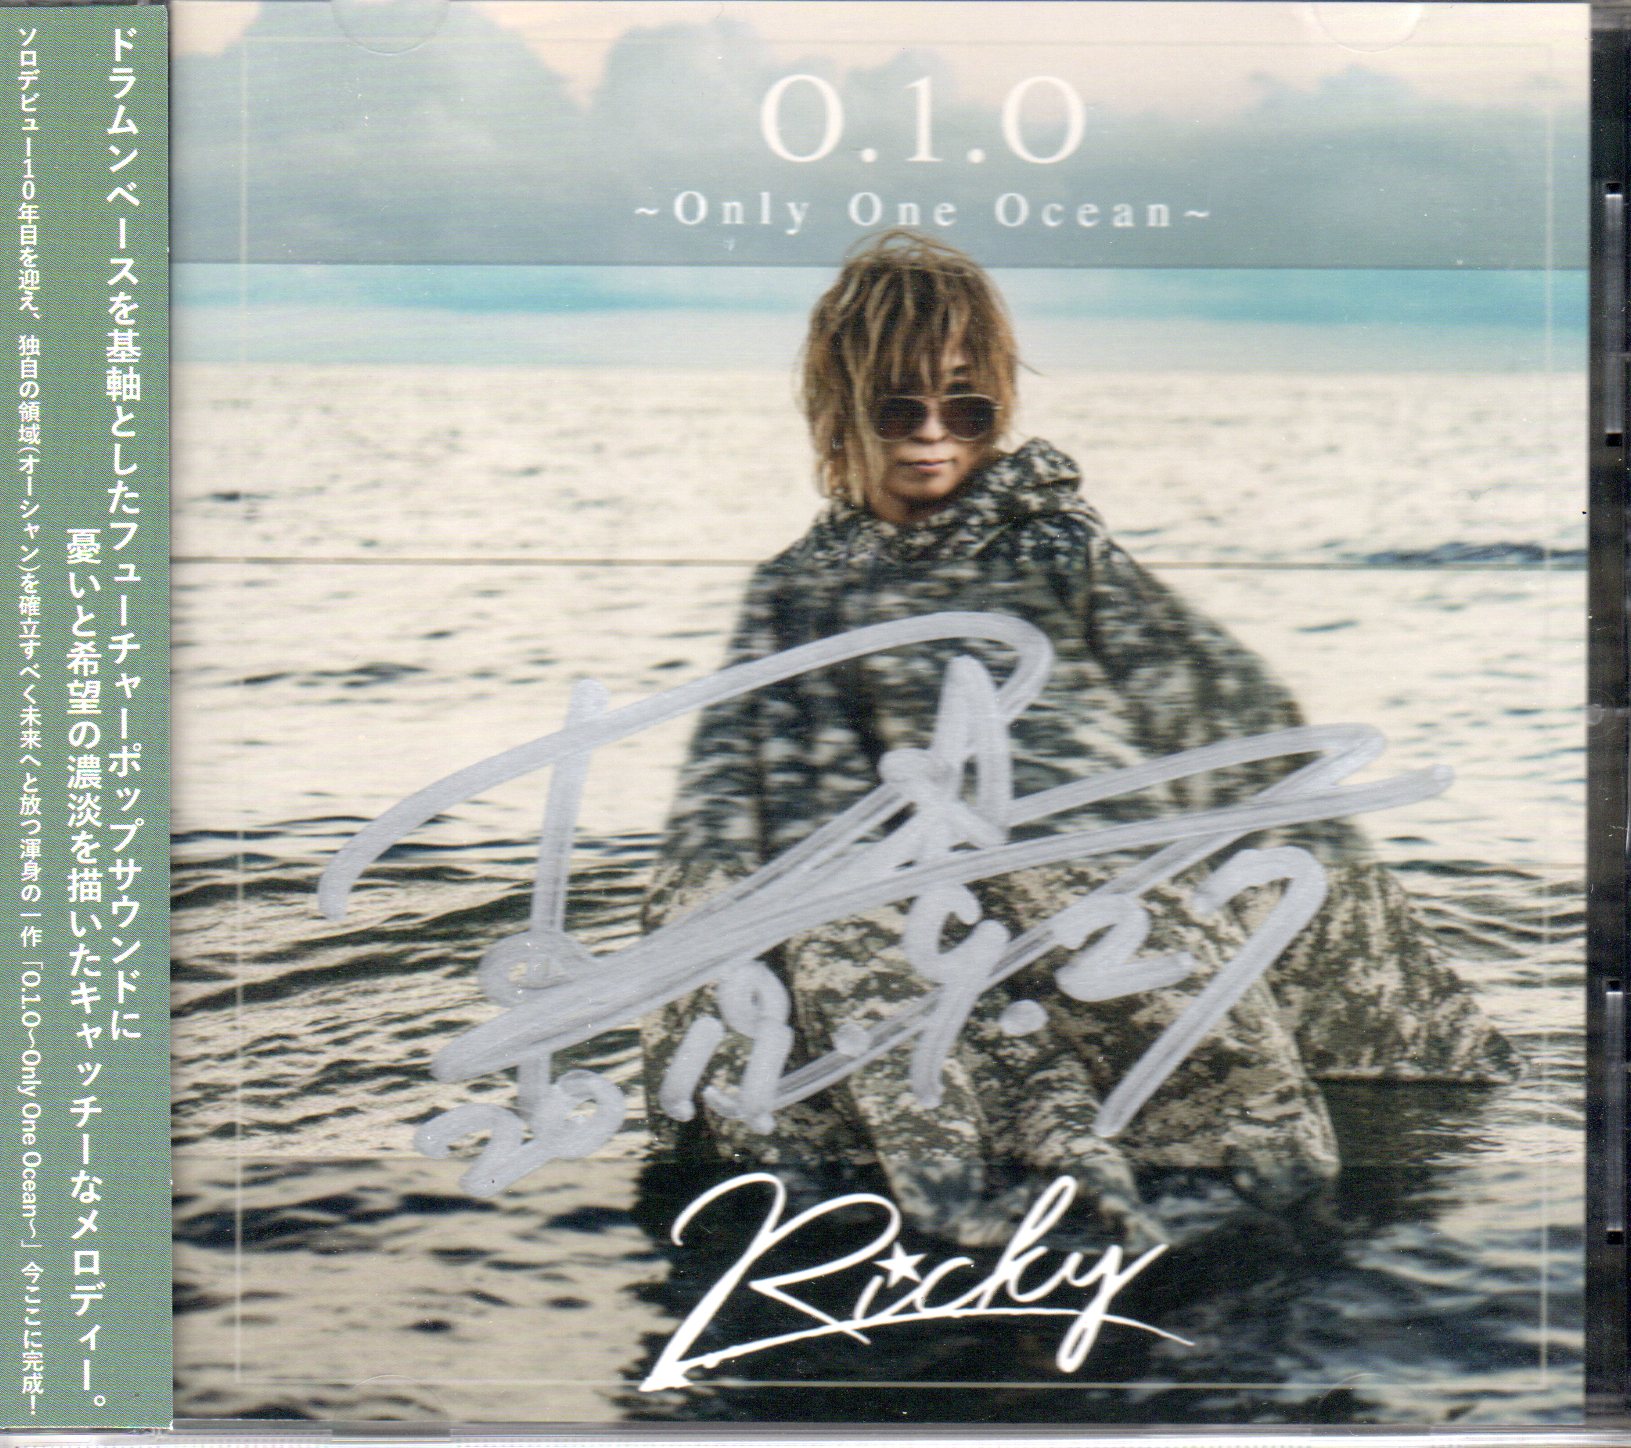 リッキー の CD 0.1.0～Only One Ocean～